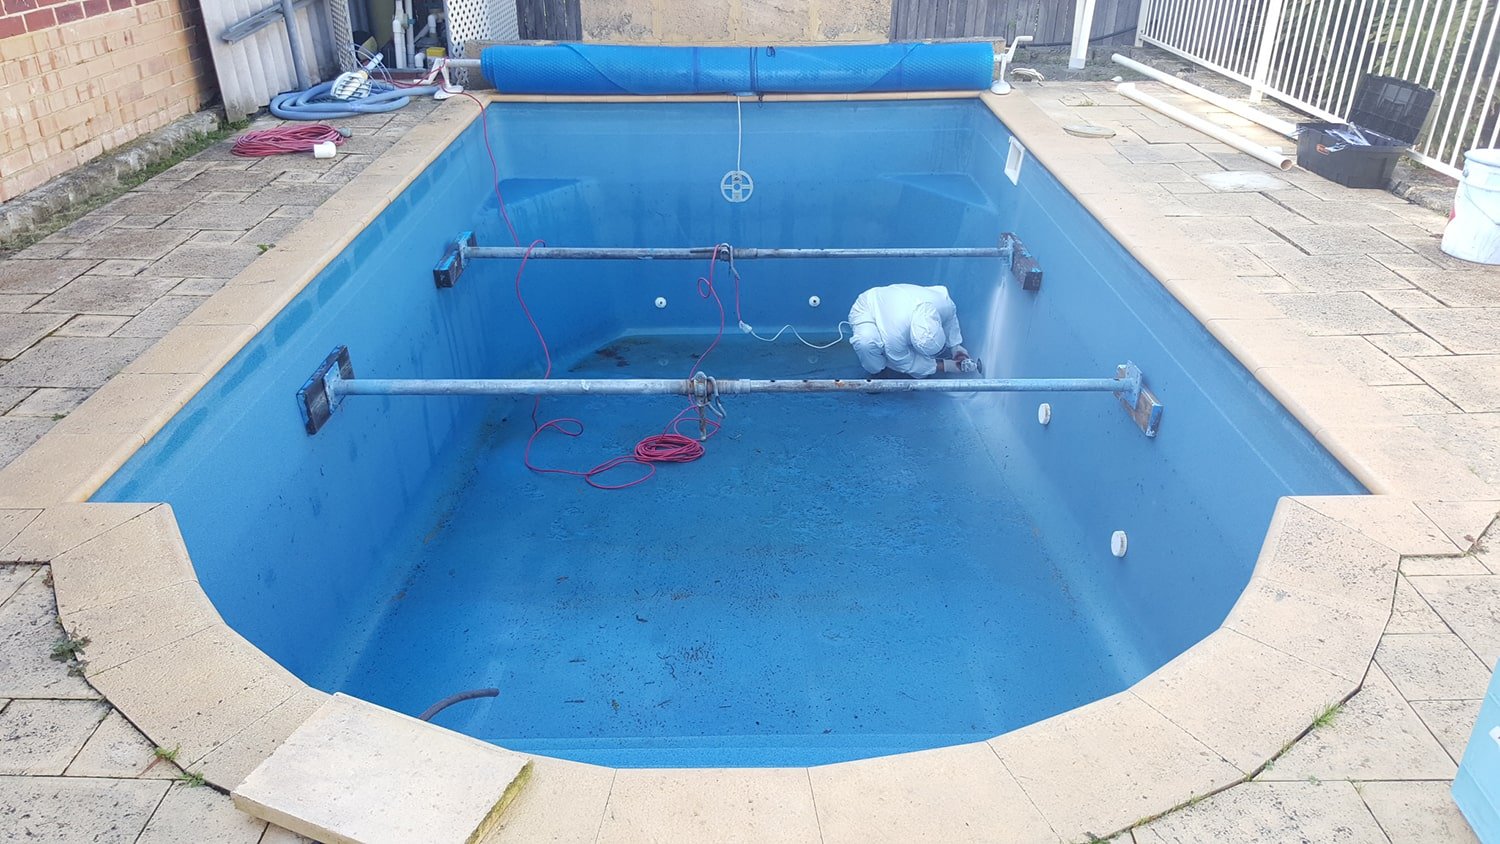 Pool Repairs Adelaide